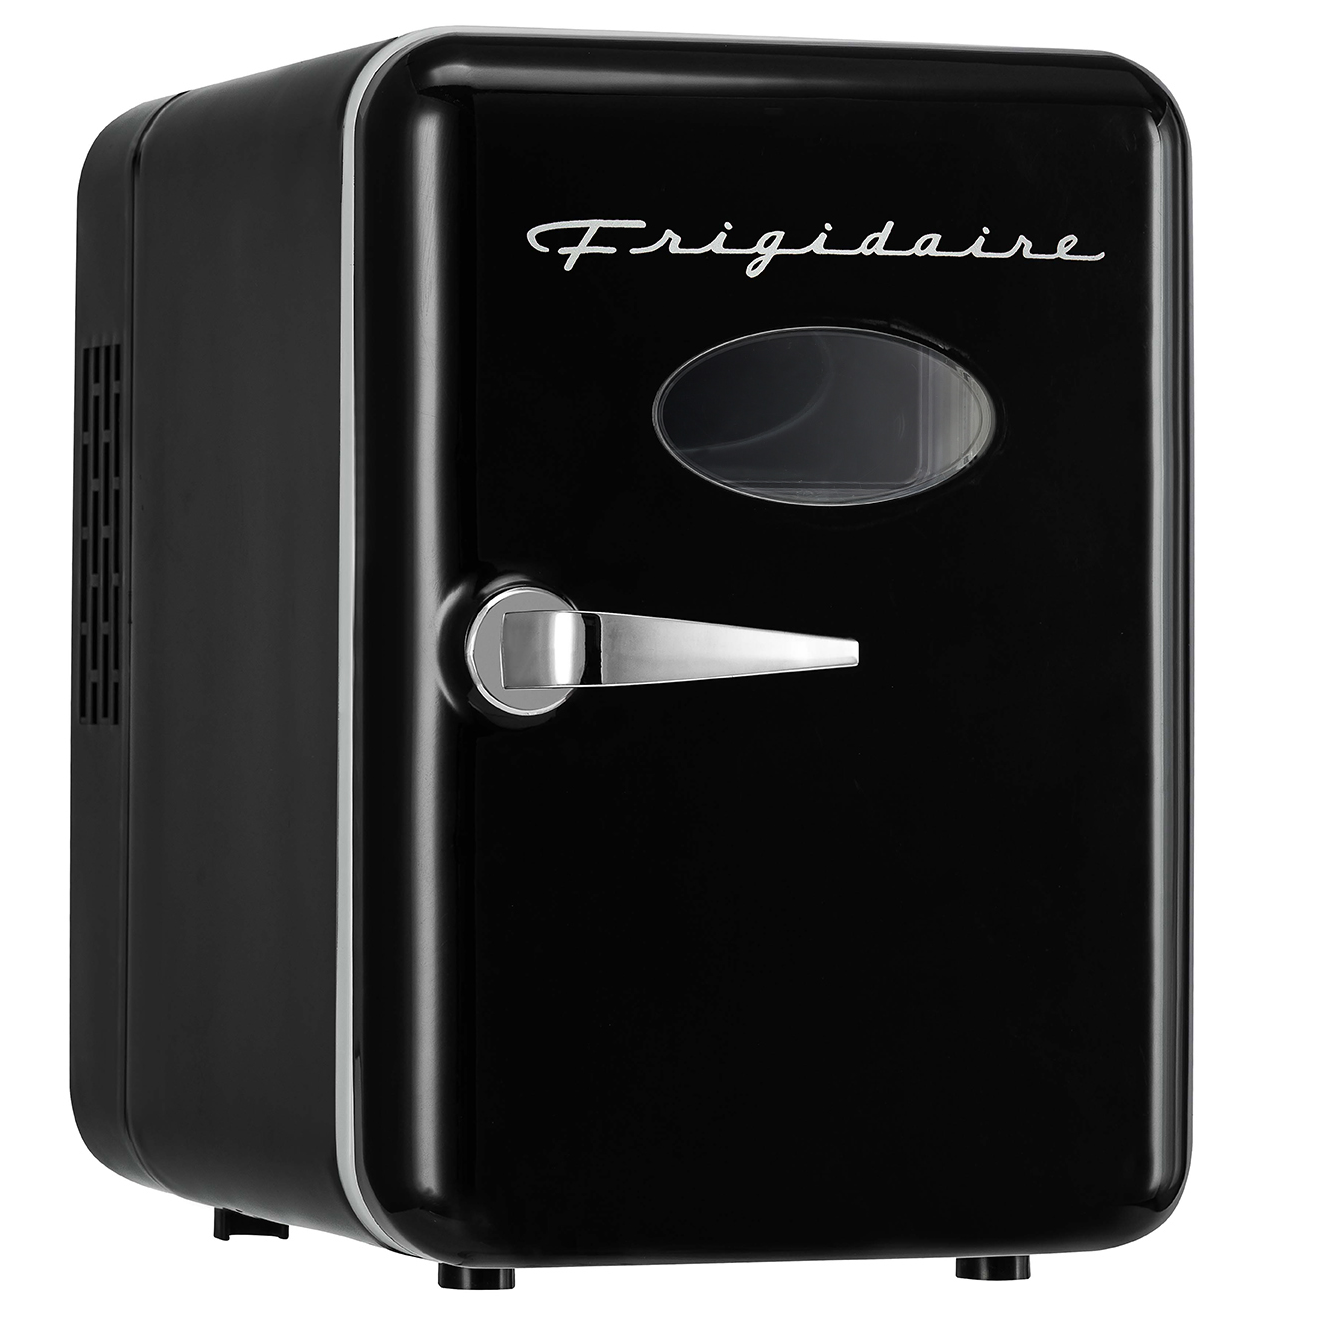 Frigidaire Retro 6-Can Mini Cooler, Black, EFMIS175 - image 1 of 11